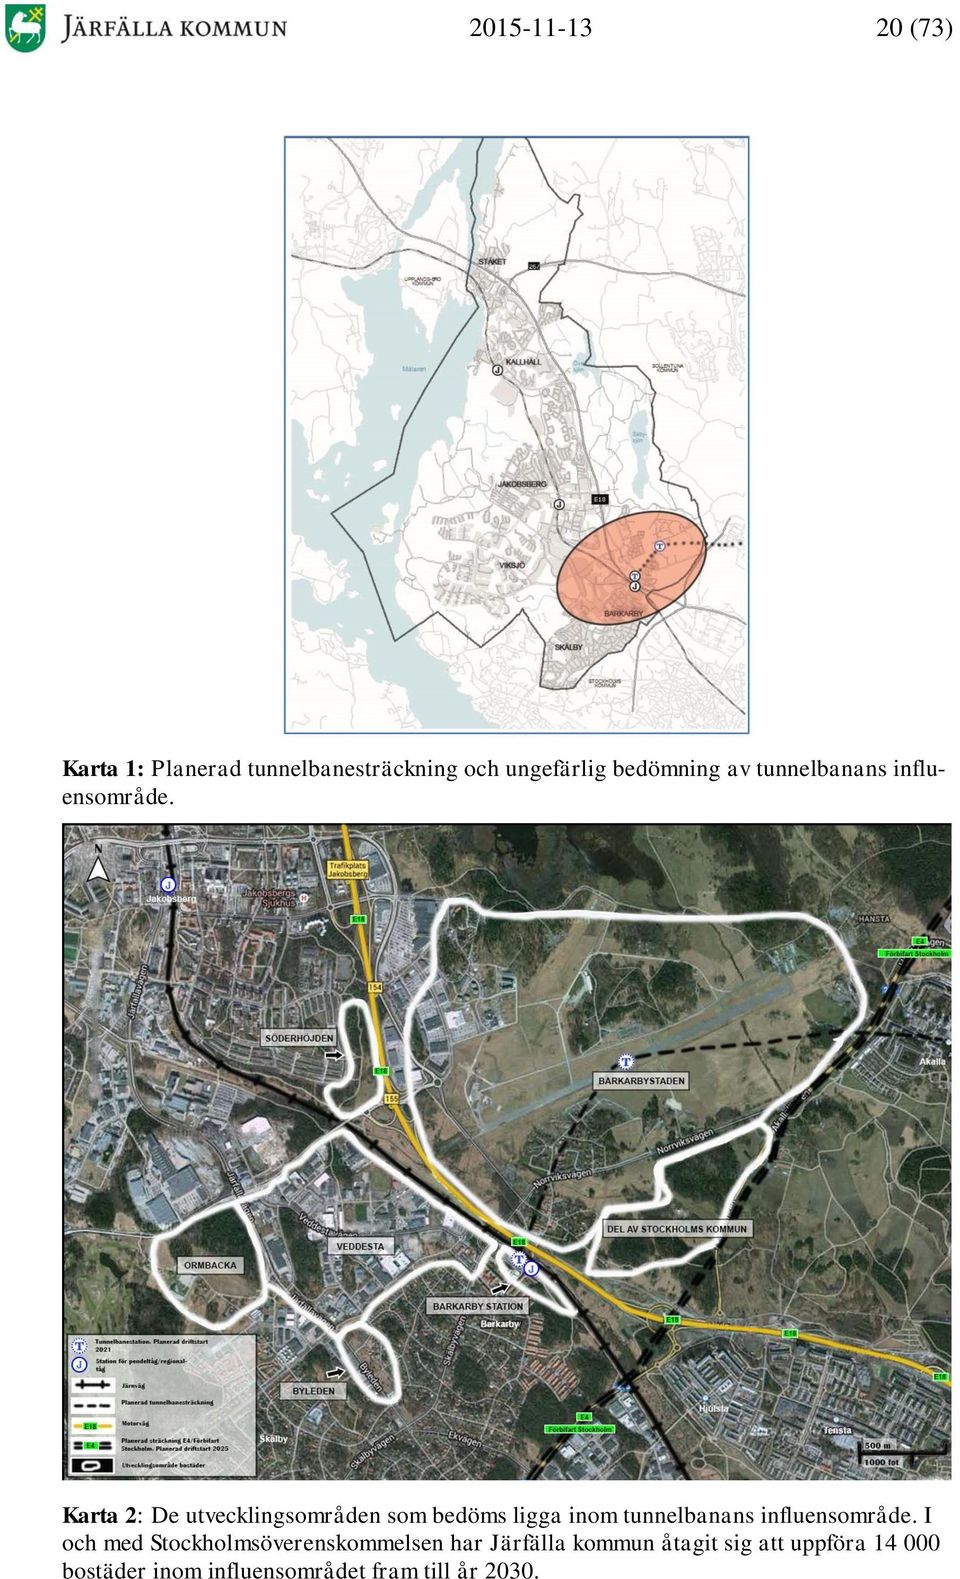 Karta 2: De utvecklingsområden som bedöms ligga inom tunnelbanans influensområde.